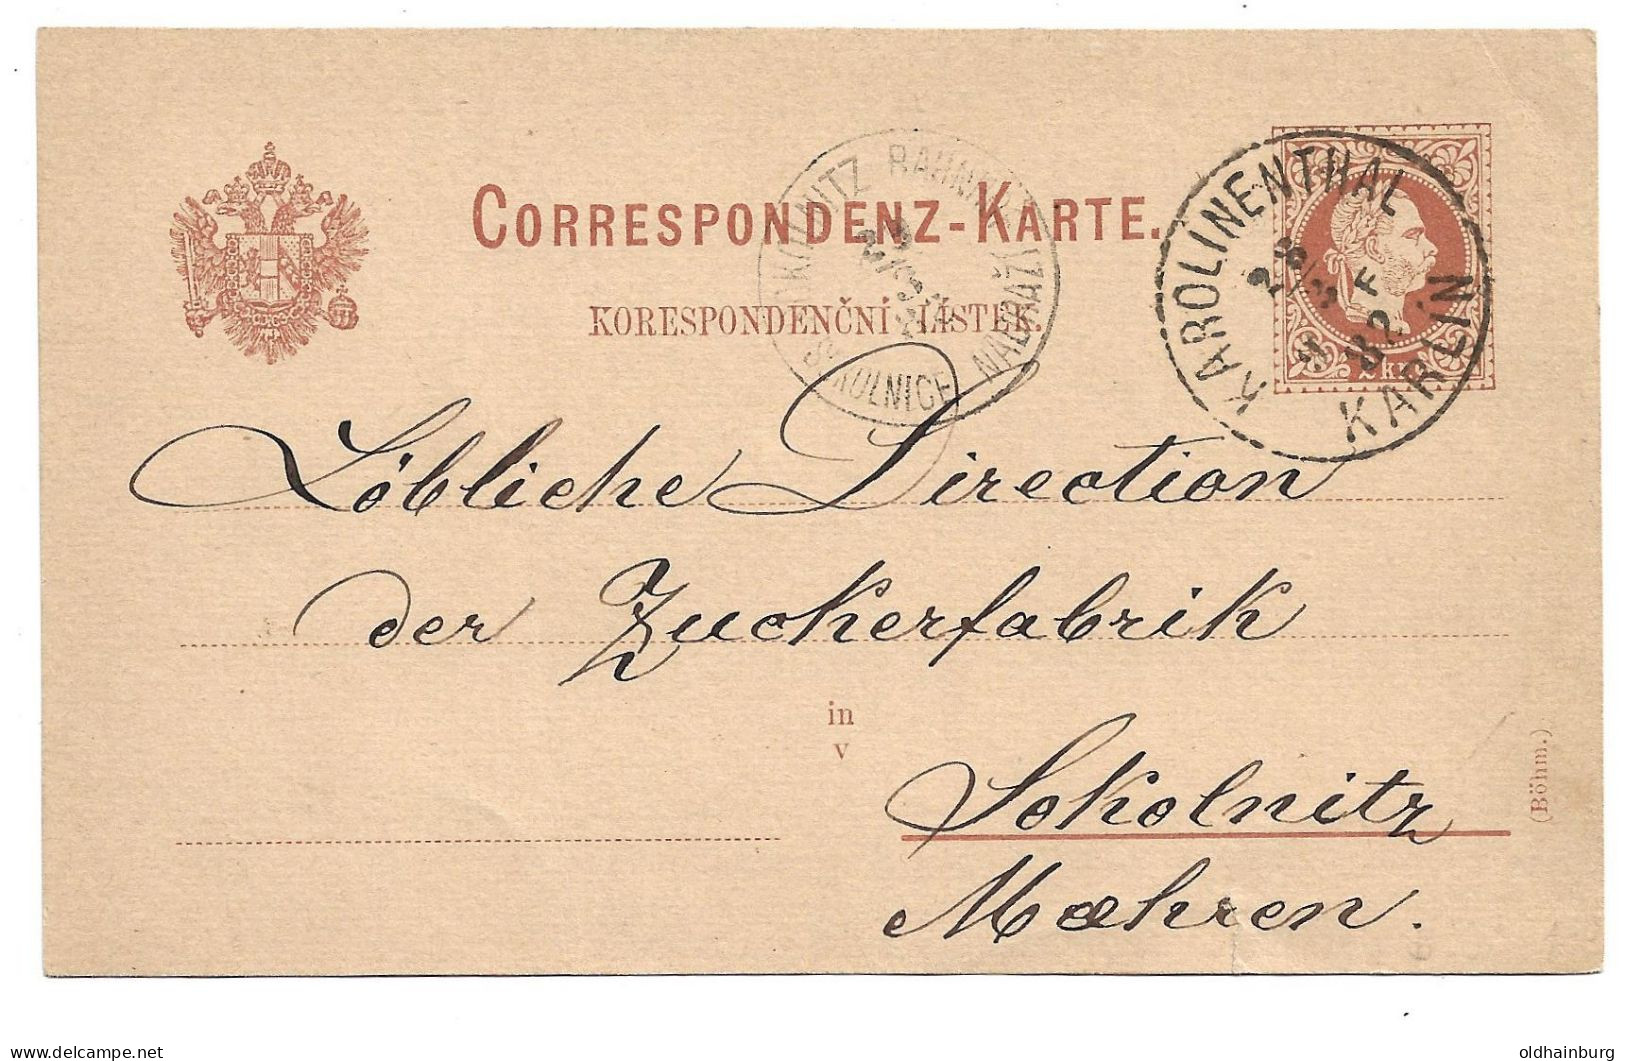 0152i: Altösterreichisches Gebiet Böhmen, Karolinenthal, Postkarte 1889 - Sobres